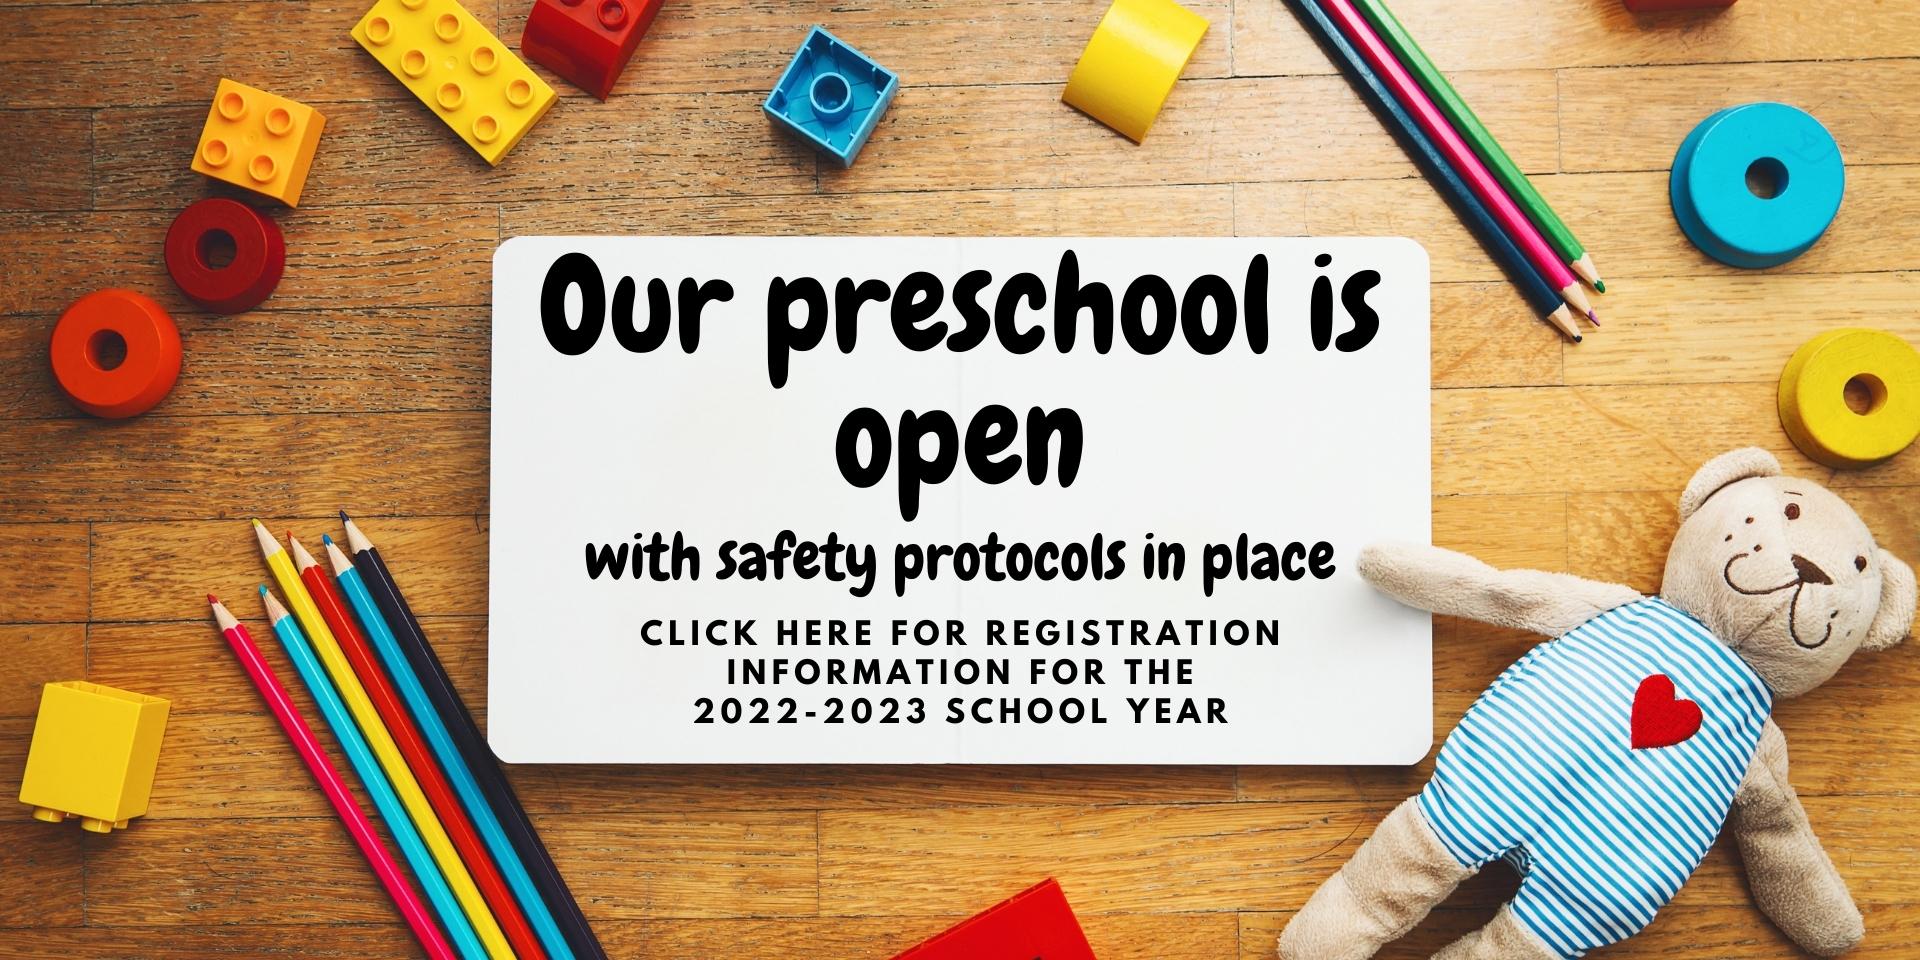 Our preschool is open